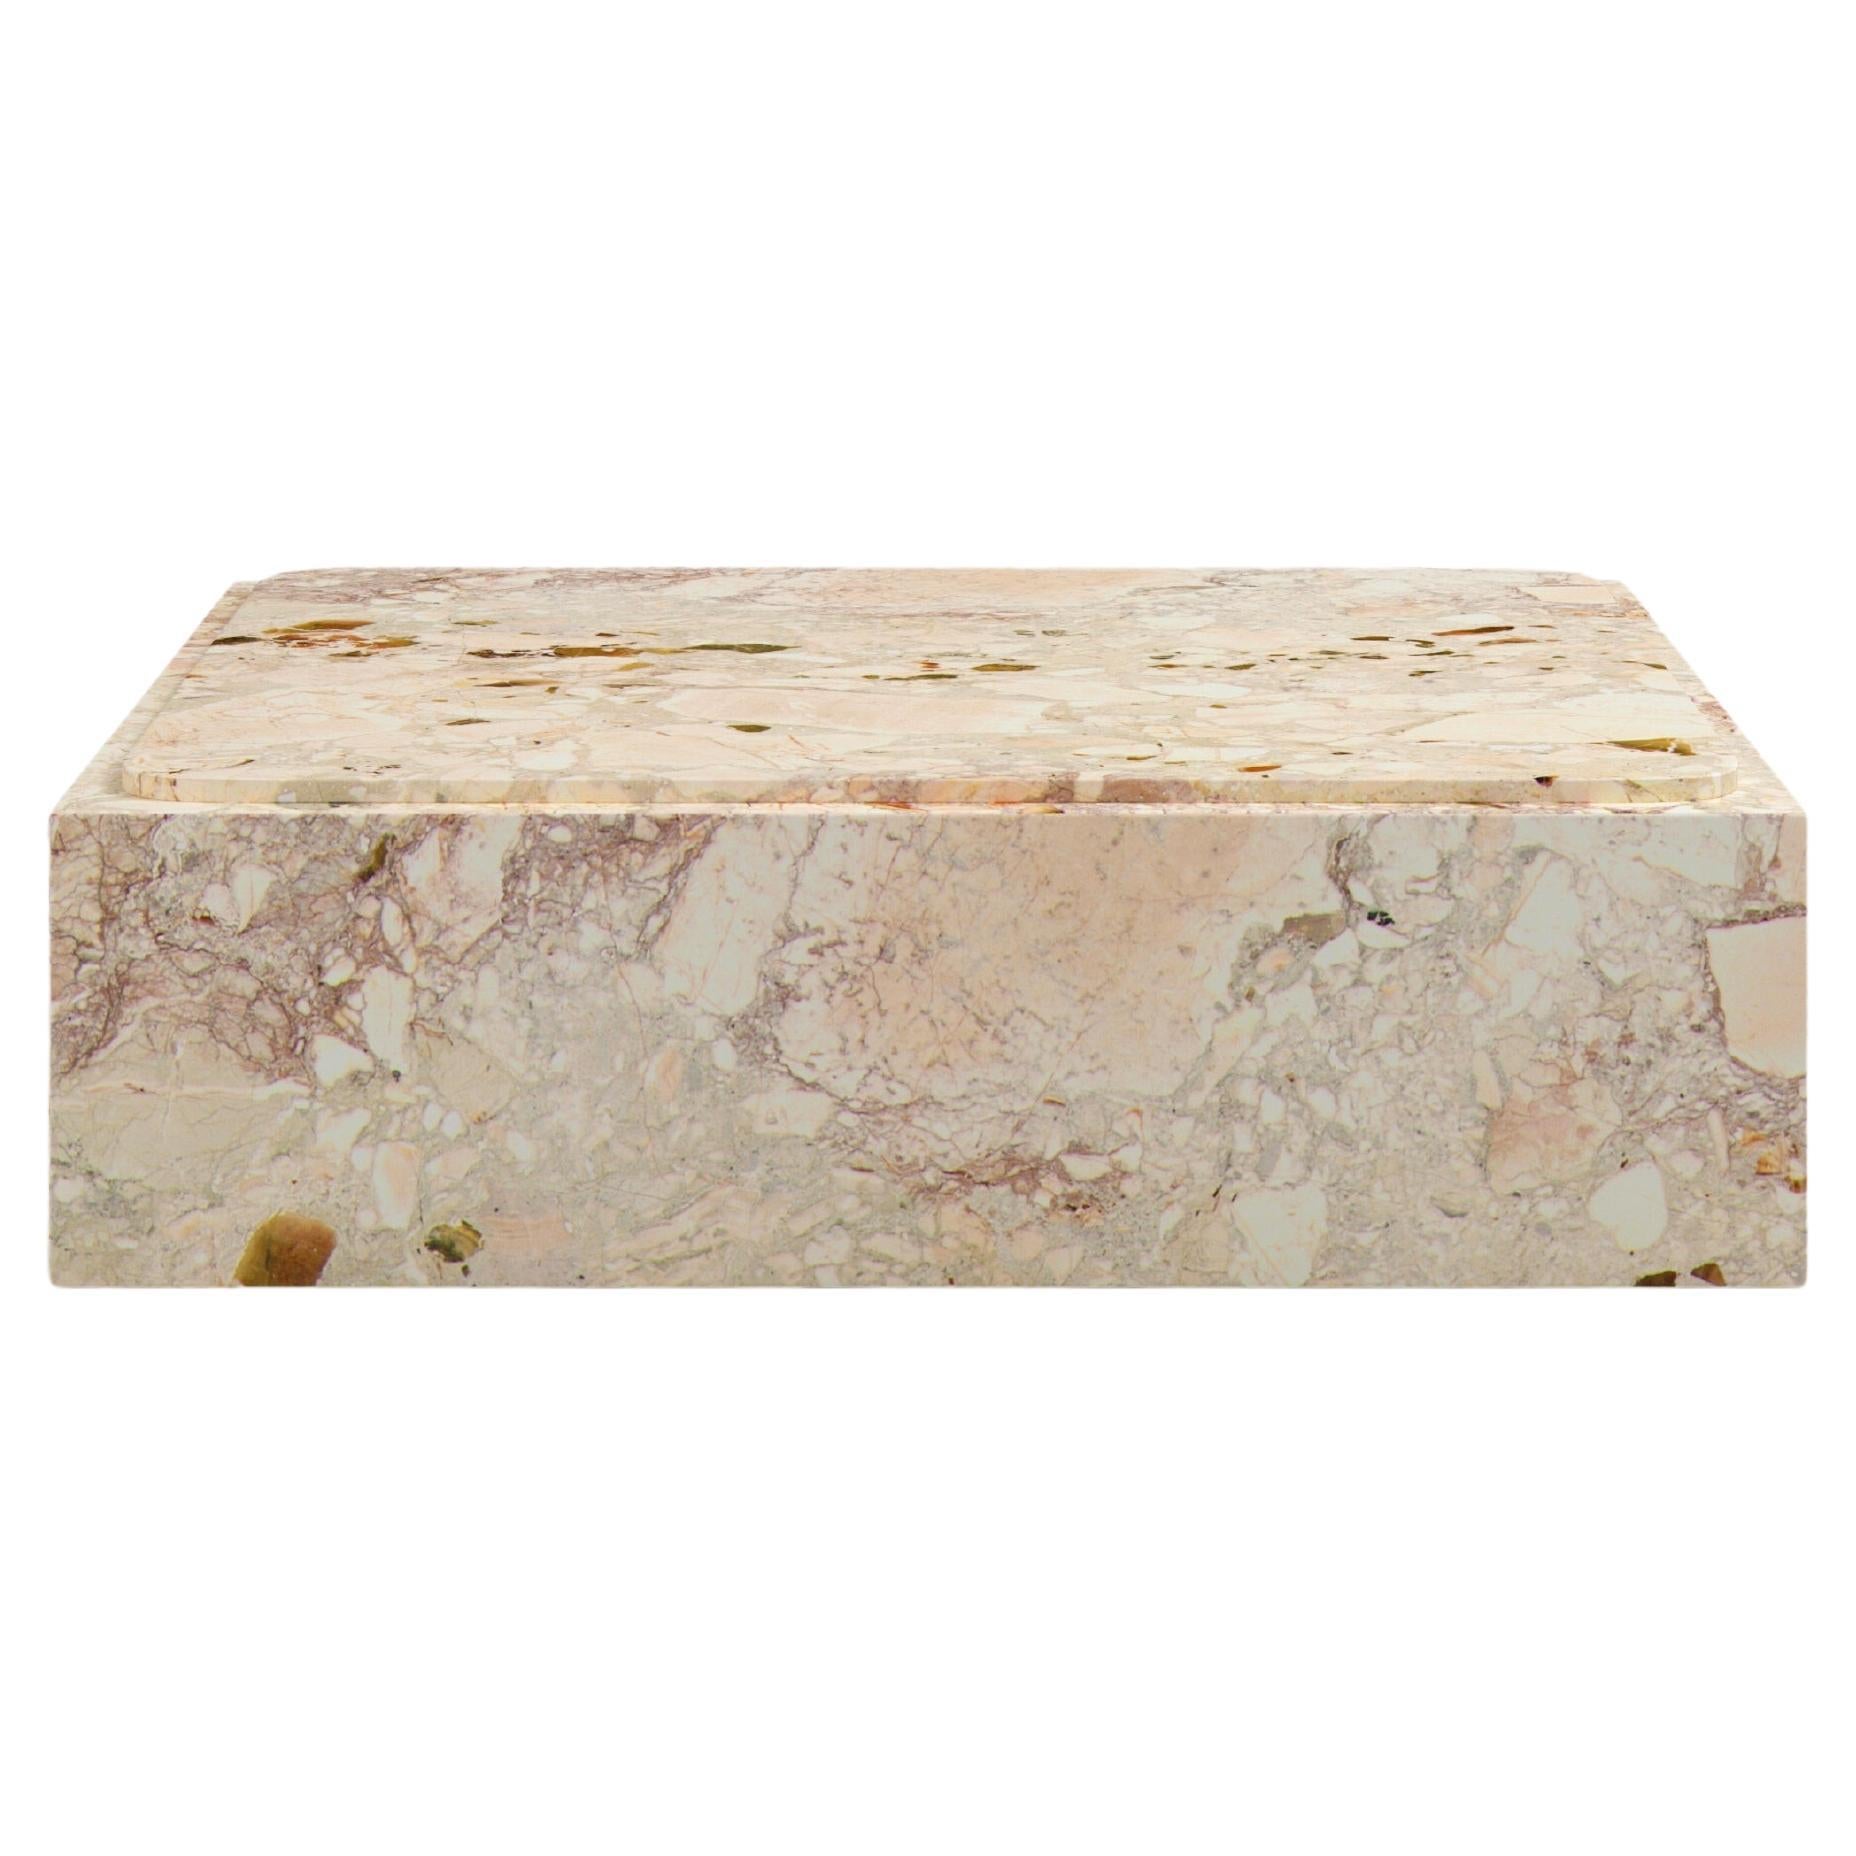 FORM(LA) Cubo Square Plinth Coffee Table 48”L x 48"W x 13”H Breccia Rosa Marble